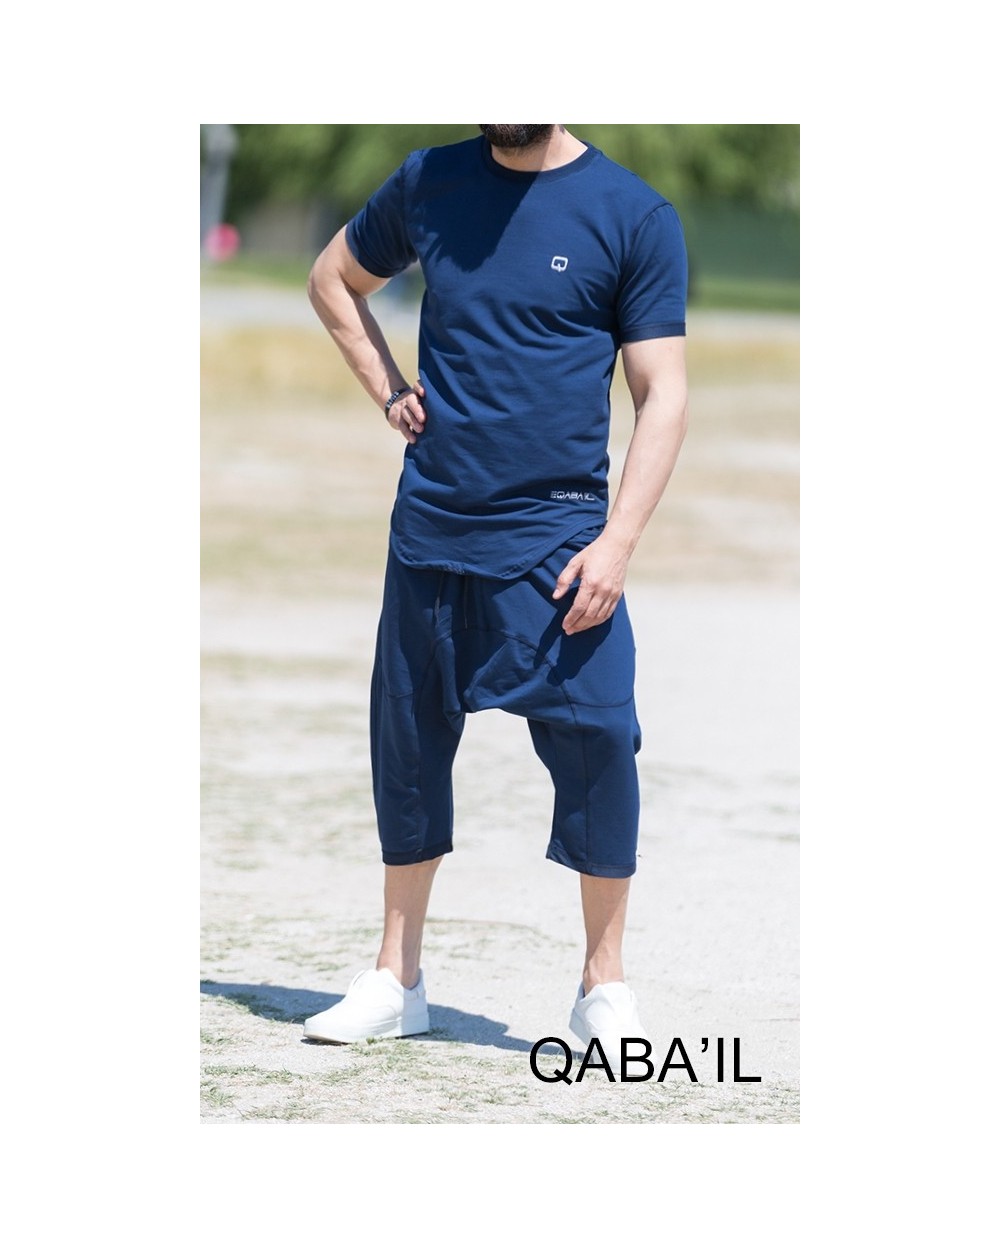 T-shirt Nautik été pour homme Qabail 2018